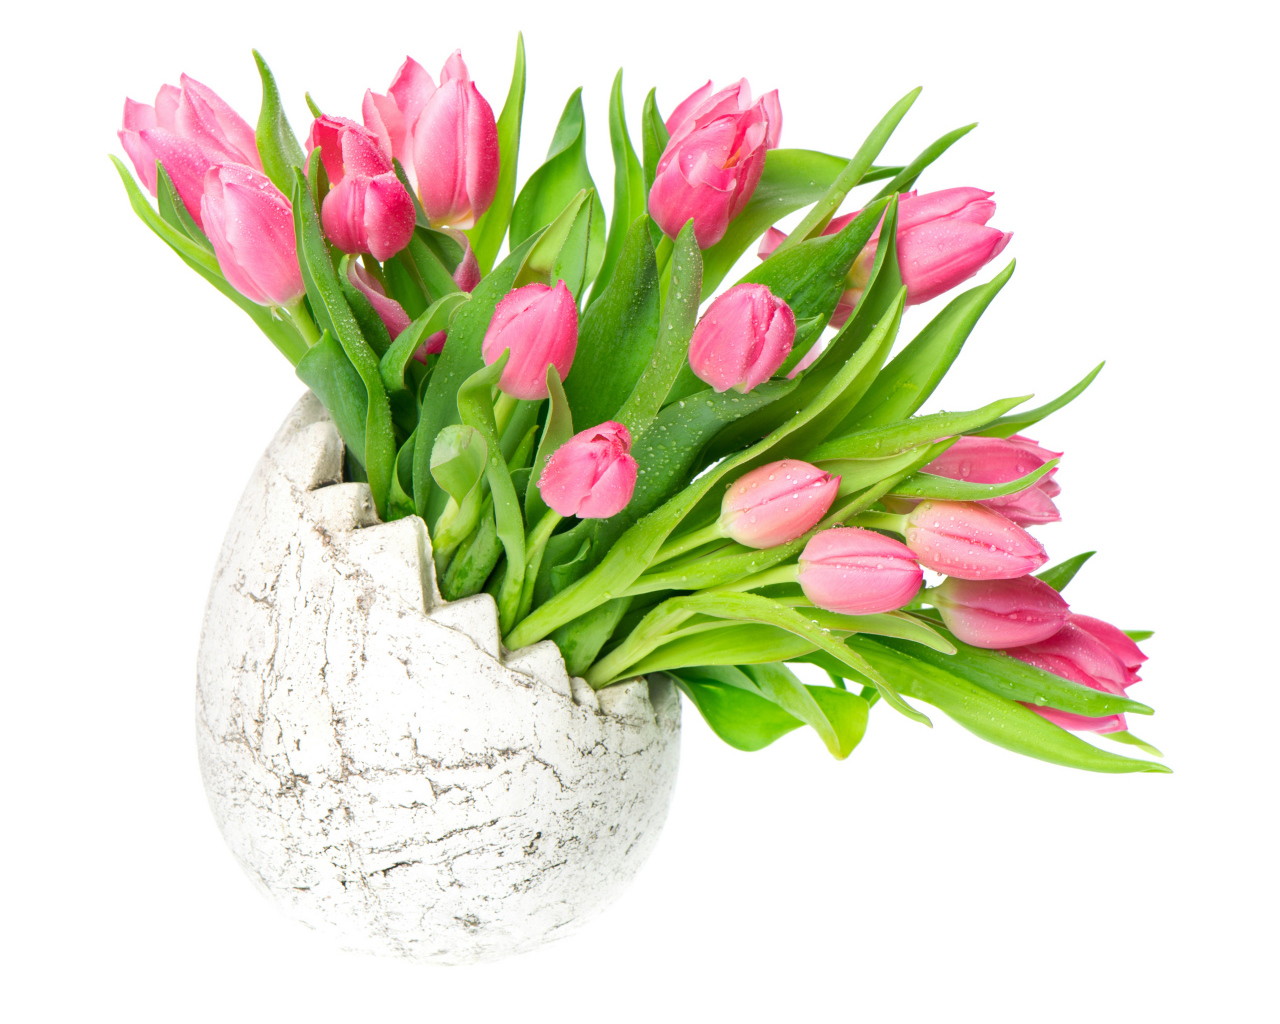 Букет розовых тюльпанов в вазе на белом фоне